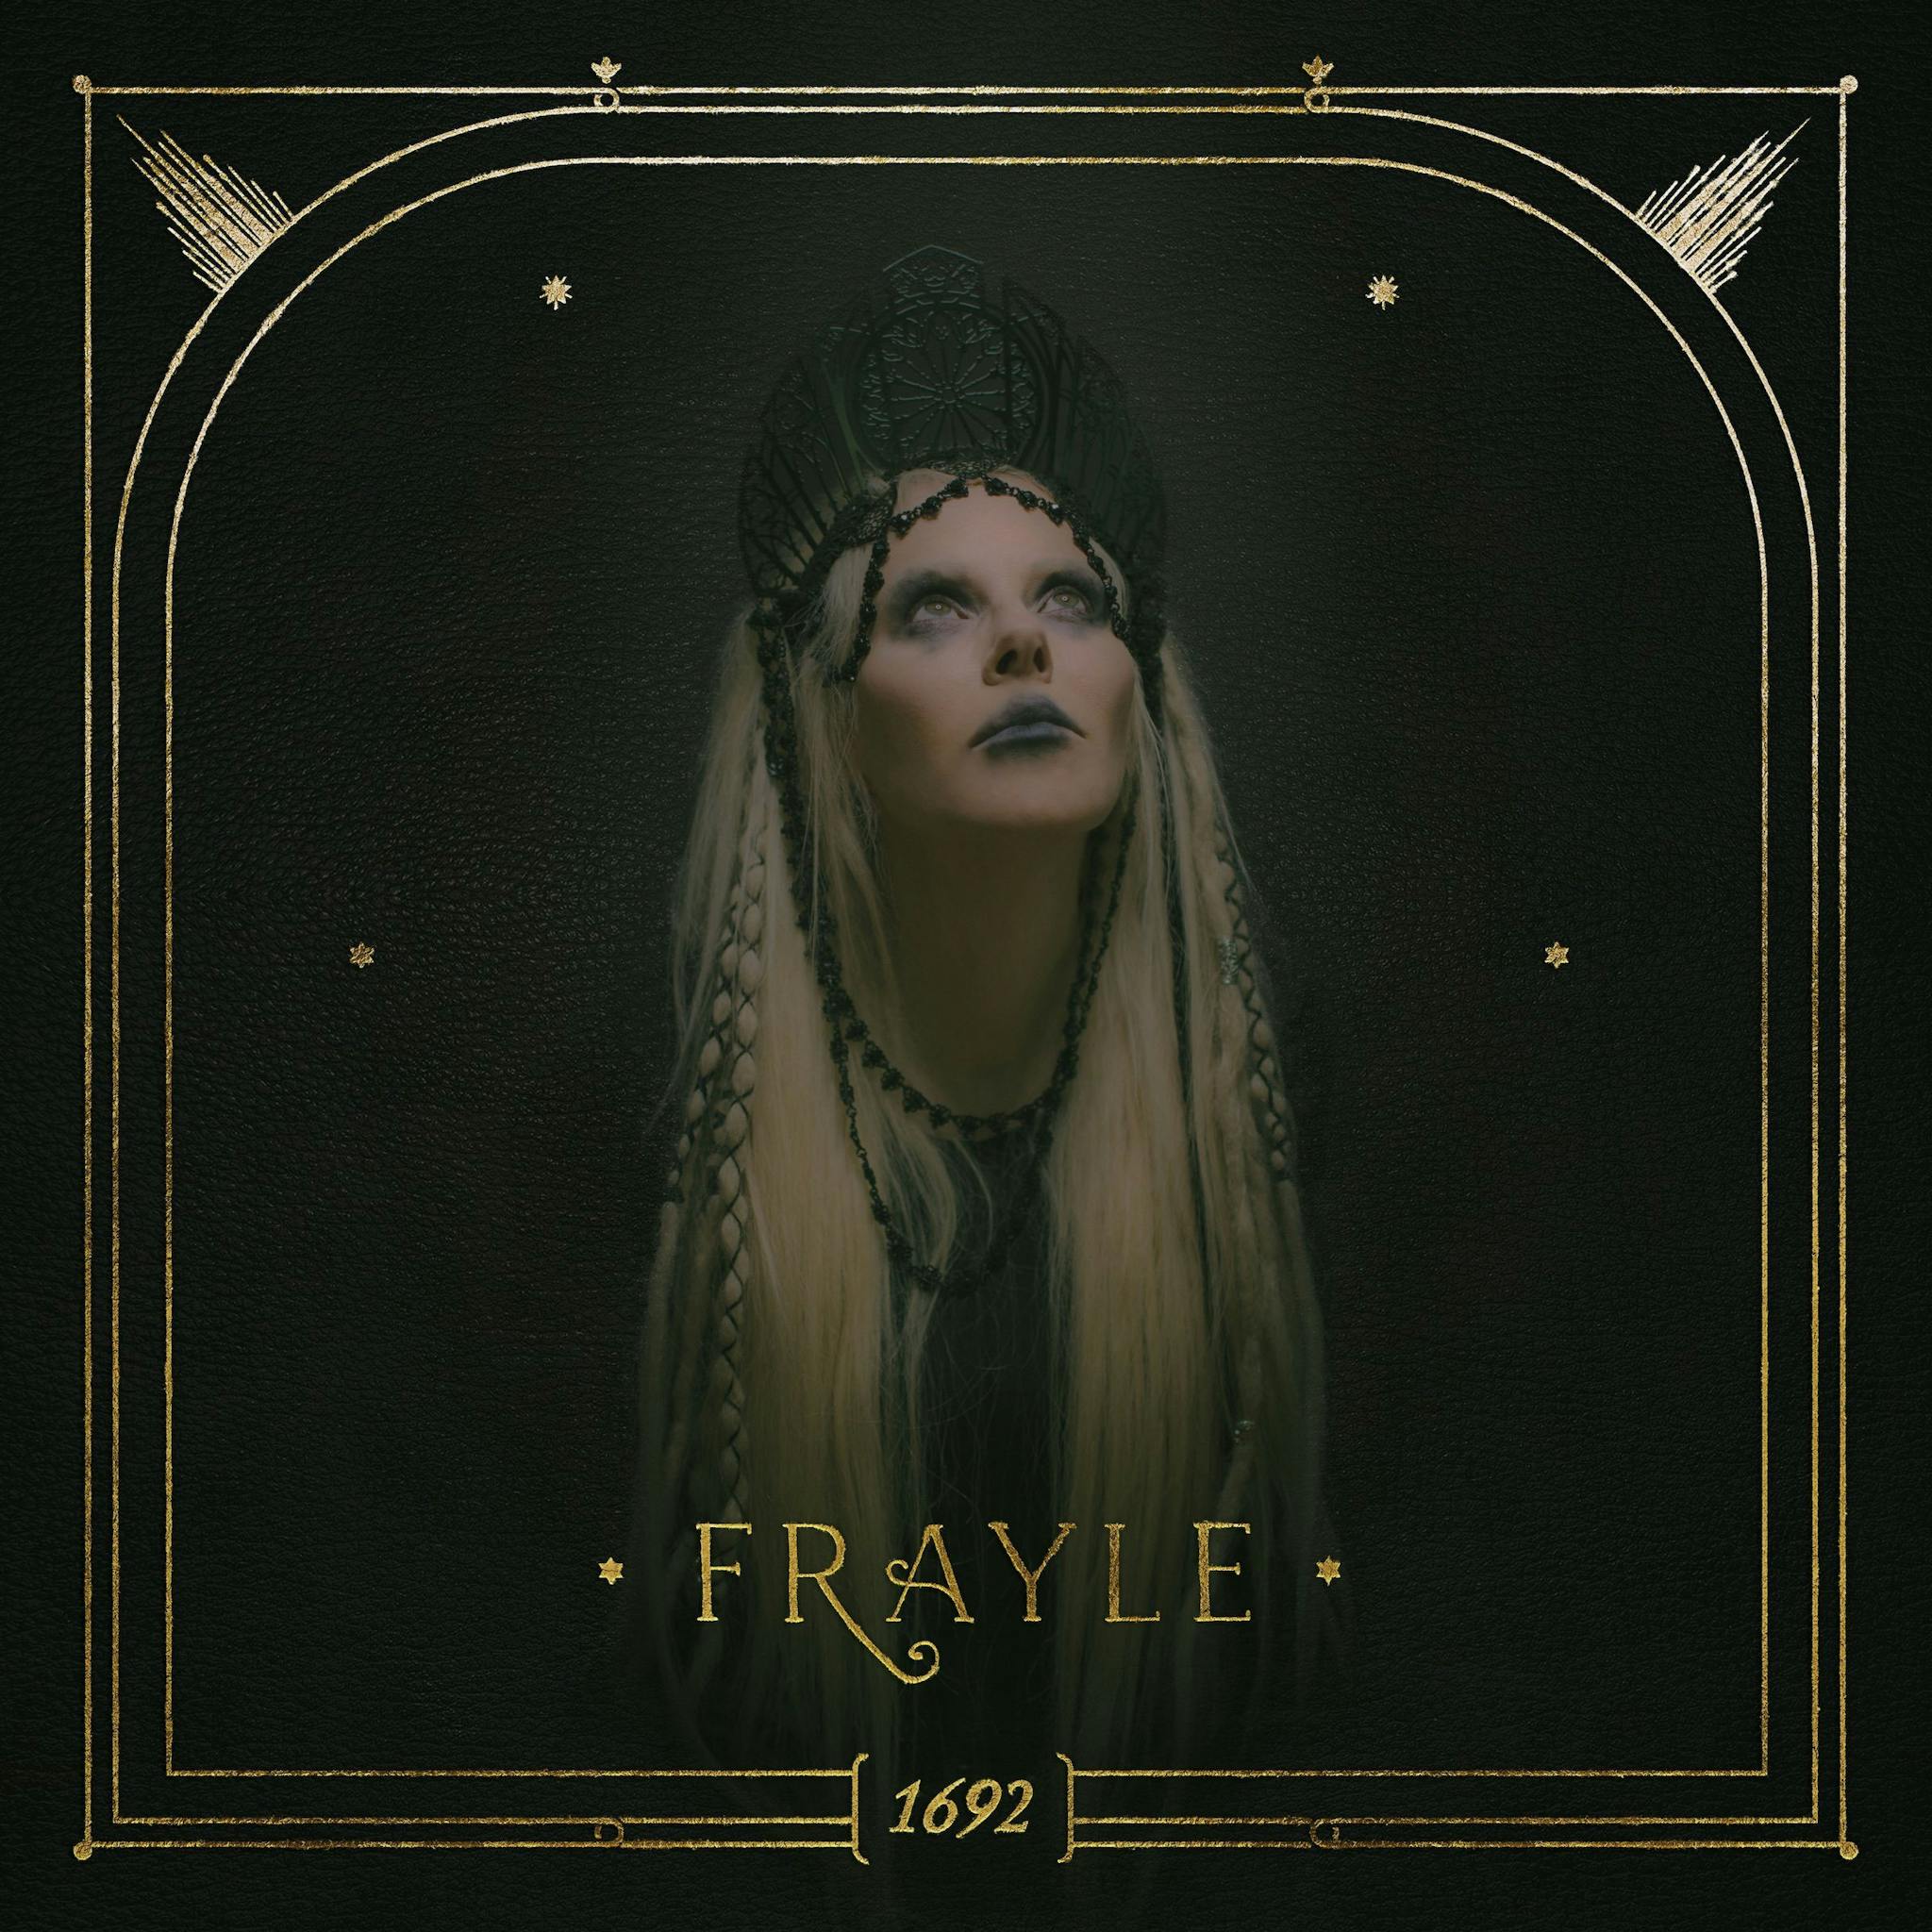 Frayle 1692